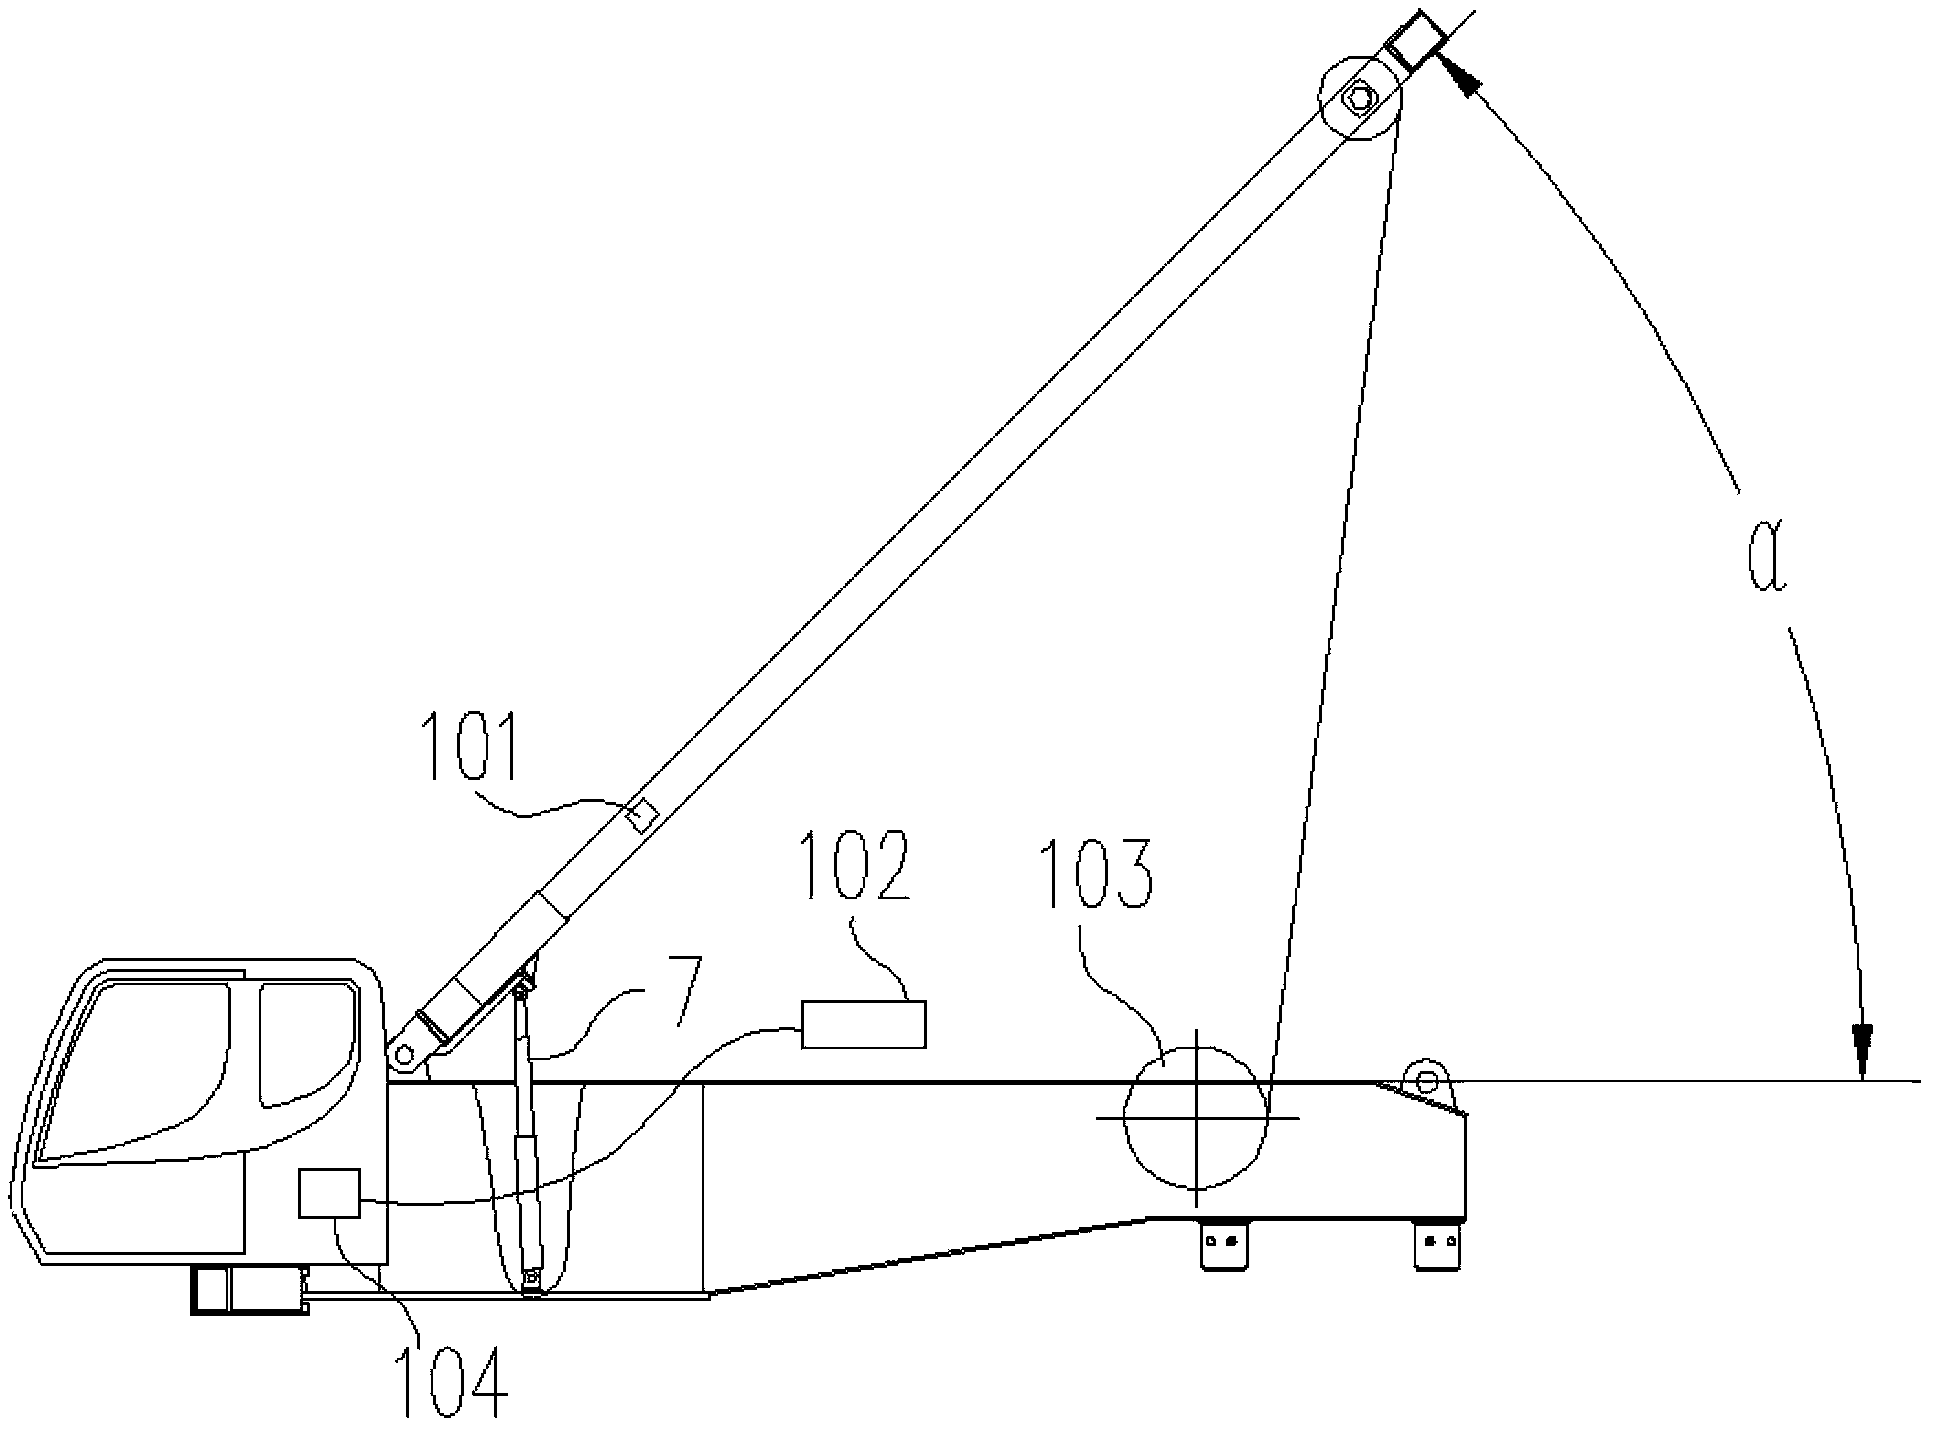 Crawler crane mast lifting hydraulic control system and method